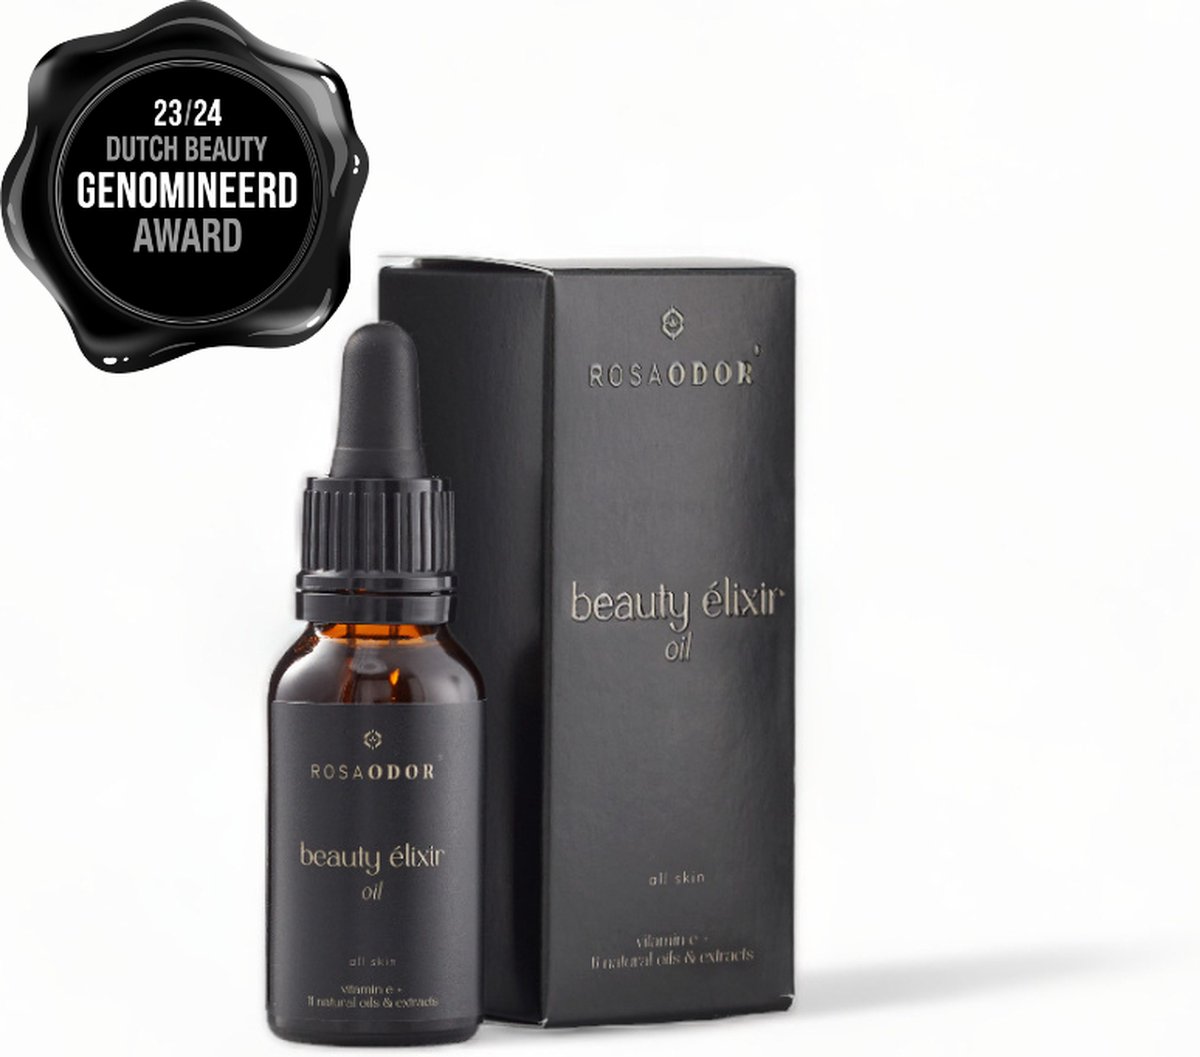 Rosaodor Beauty elixir oil Glow serum – Serum voor een stralende huid 30ml - AWARD WINNING